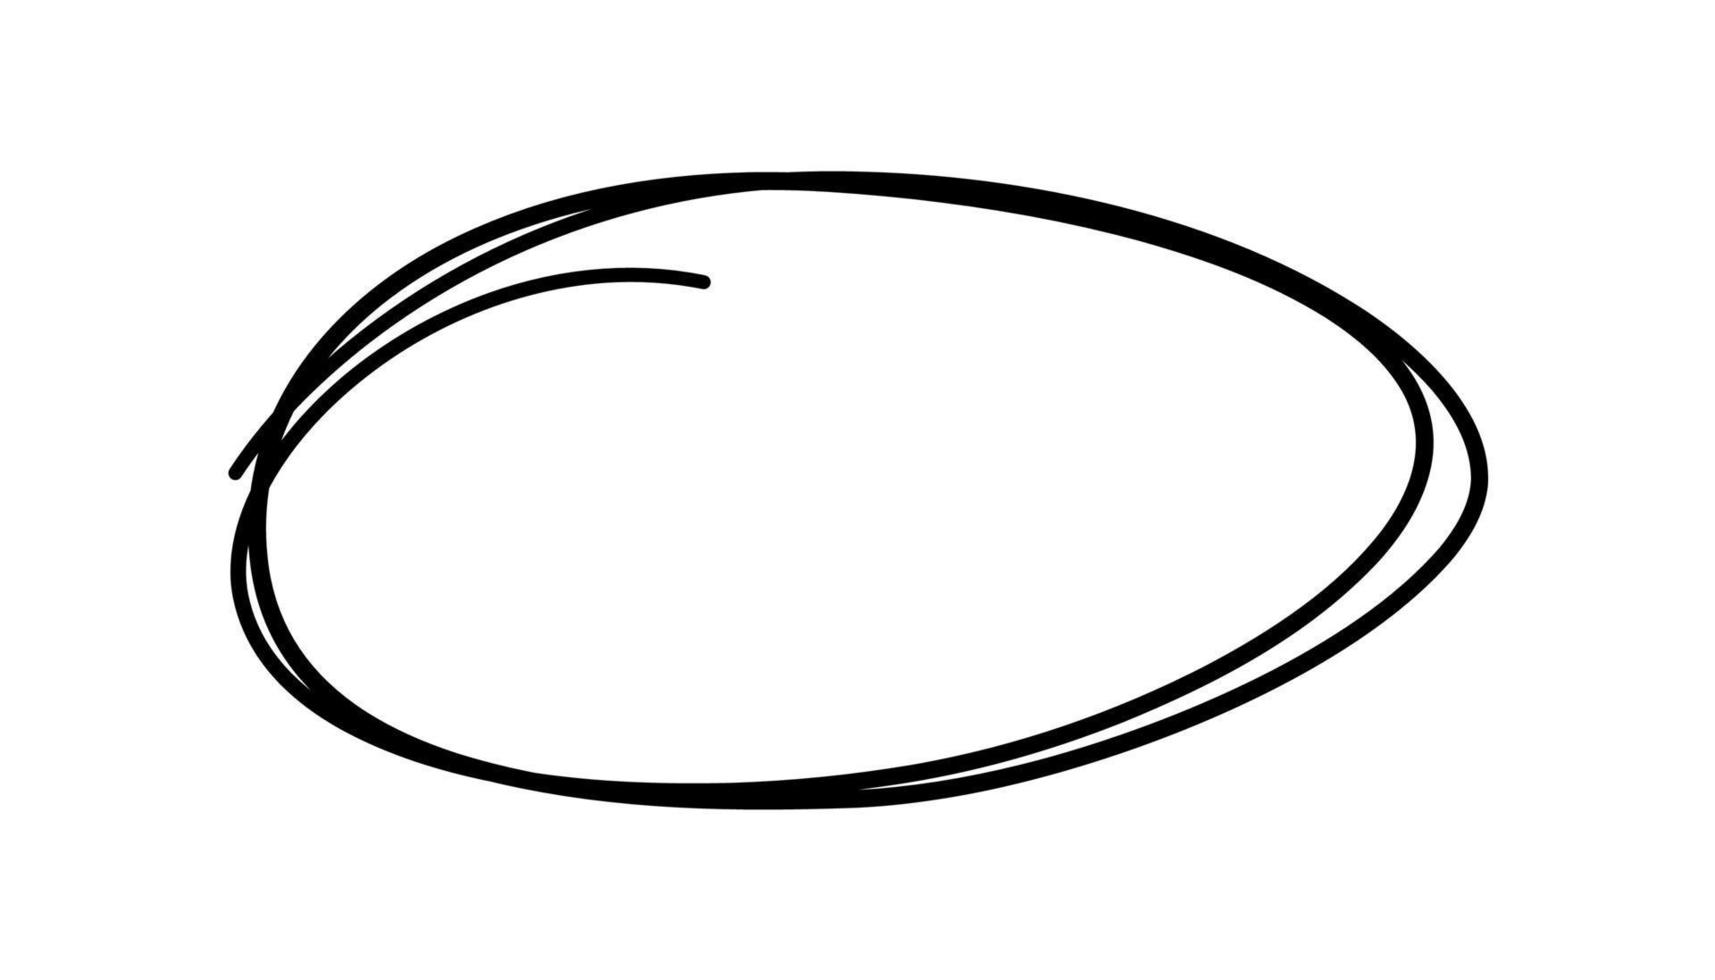 scarabocchio disegnato a mano ovale. sottolineatura dello schizzo di doodle. evidenziare la cornice del cerchio. ellisse in stile doodle. illustrazione vettoriale isolato su sfondo bianco